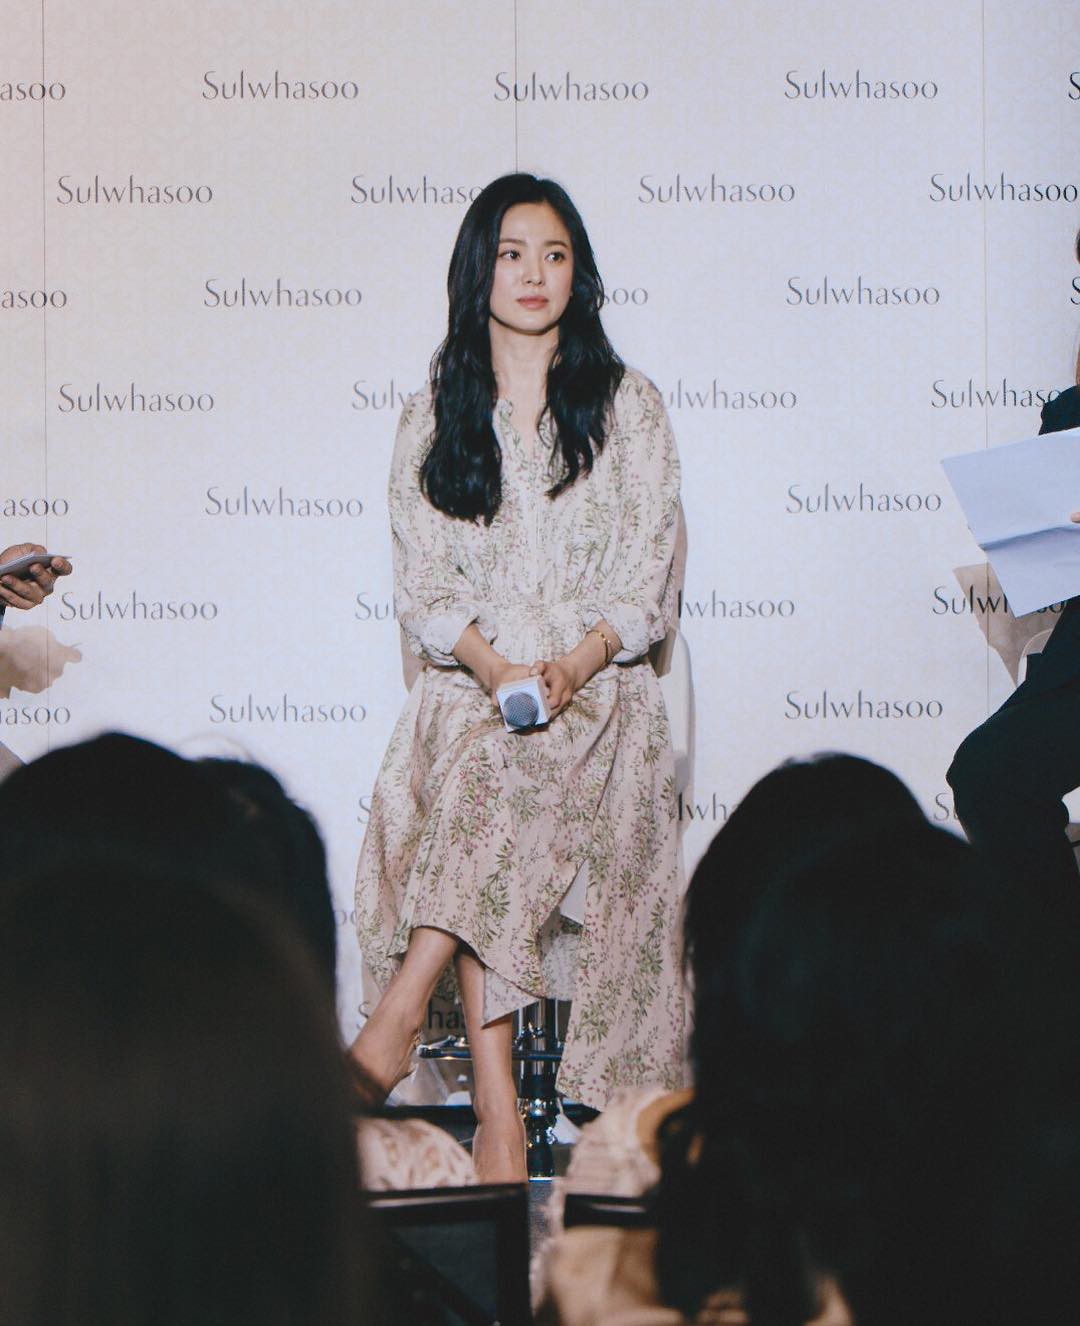 Ngay sau khi tháo nhẫn cưới: Style của Song Hye Kyo đã tiến bộ vượt bậc, không còn nhạt như nước ốc” giống trước kia-5